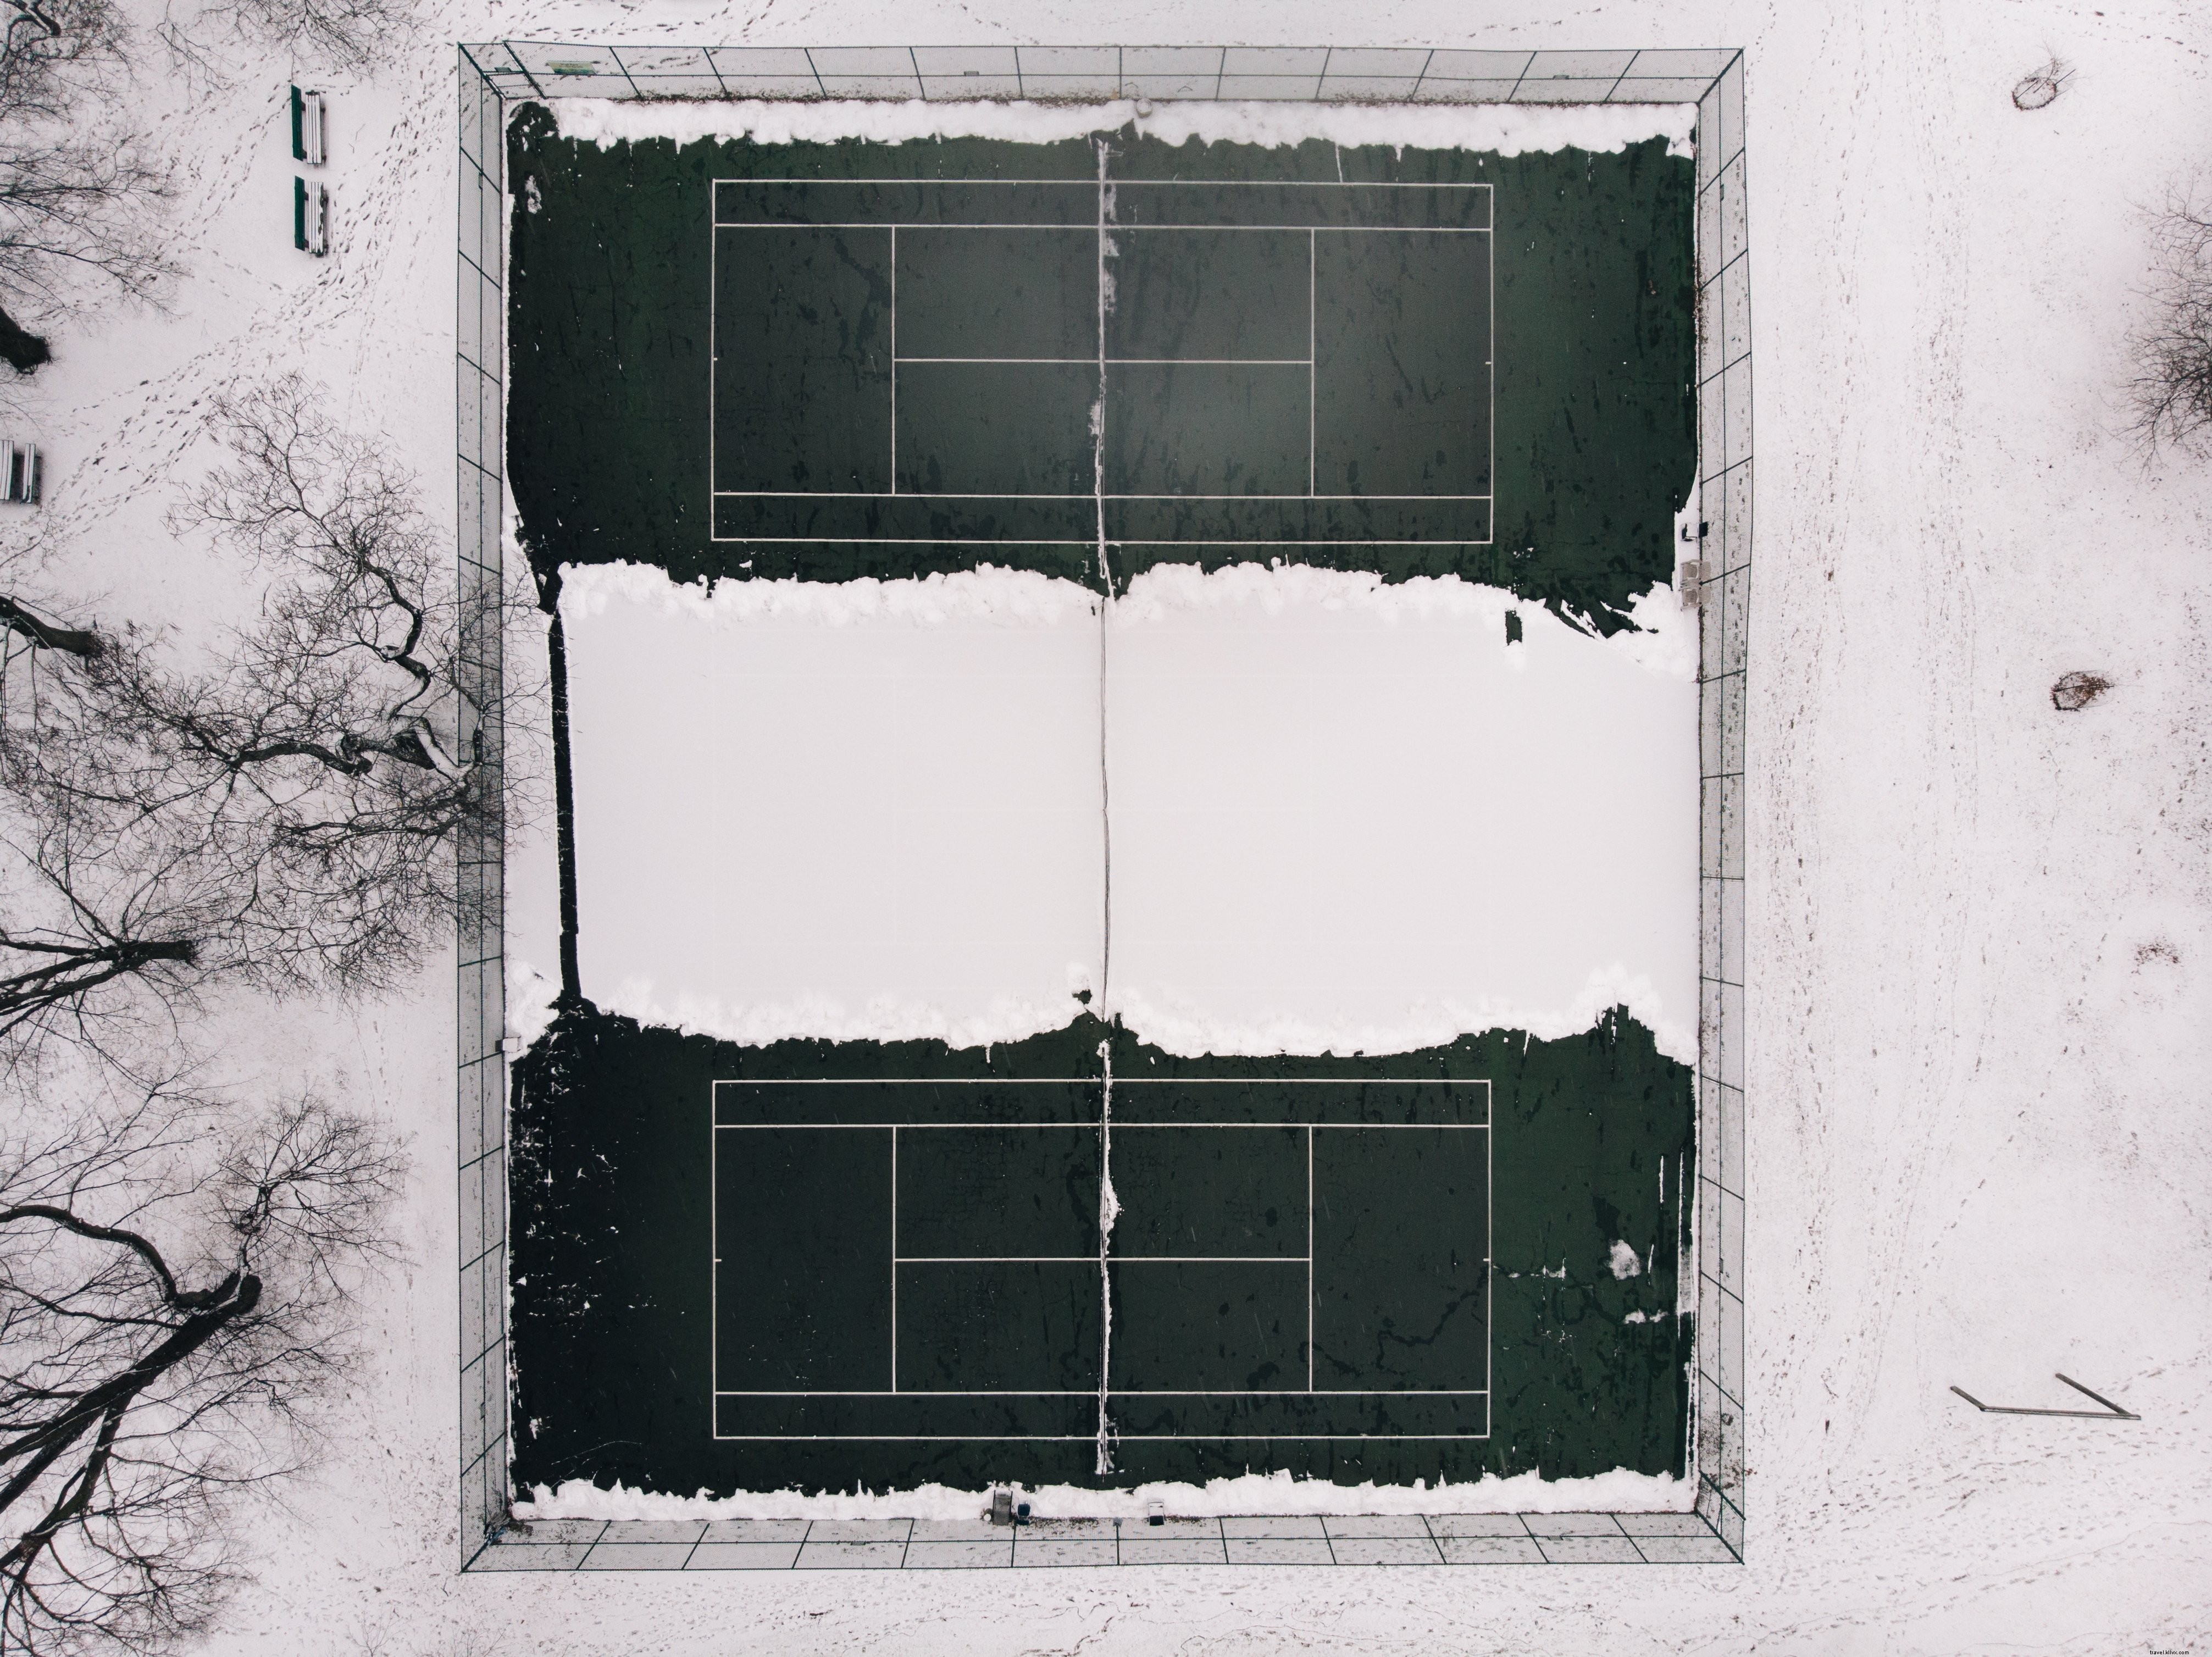 Foto de quadras de tênis abandonadas para a temporada de inverno